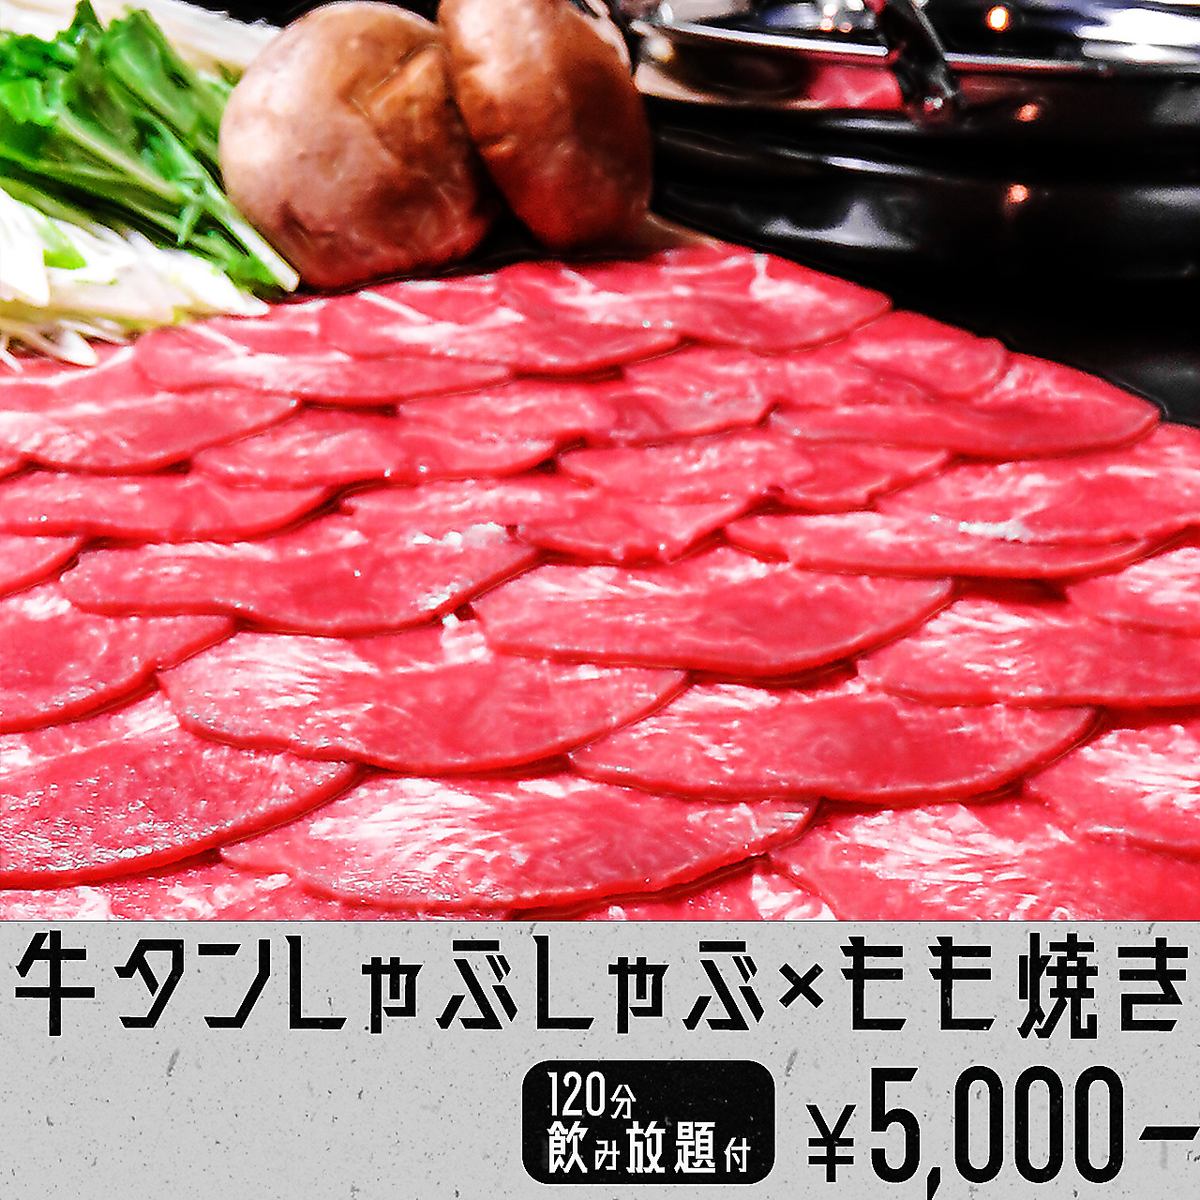 人氣很高◎肉店直送!烤大腿+火鍋套餐5,000日圓～